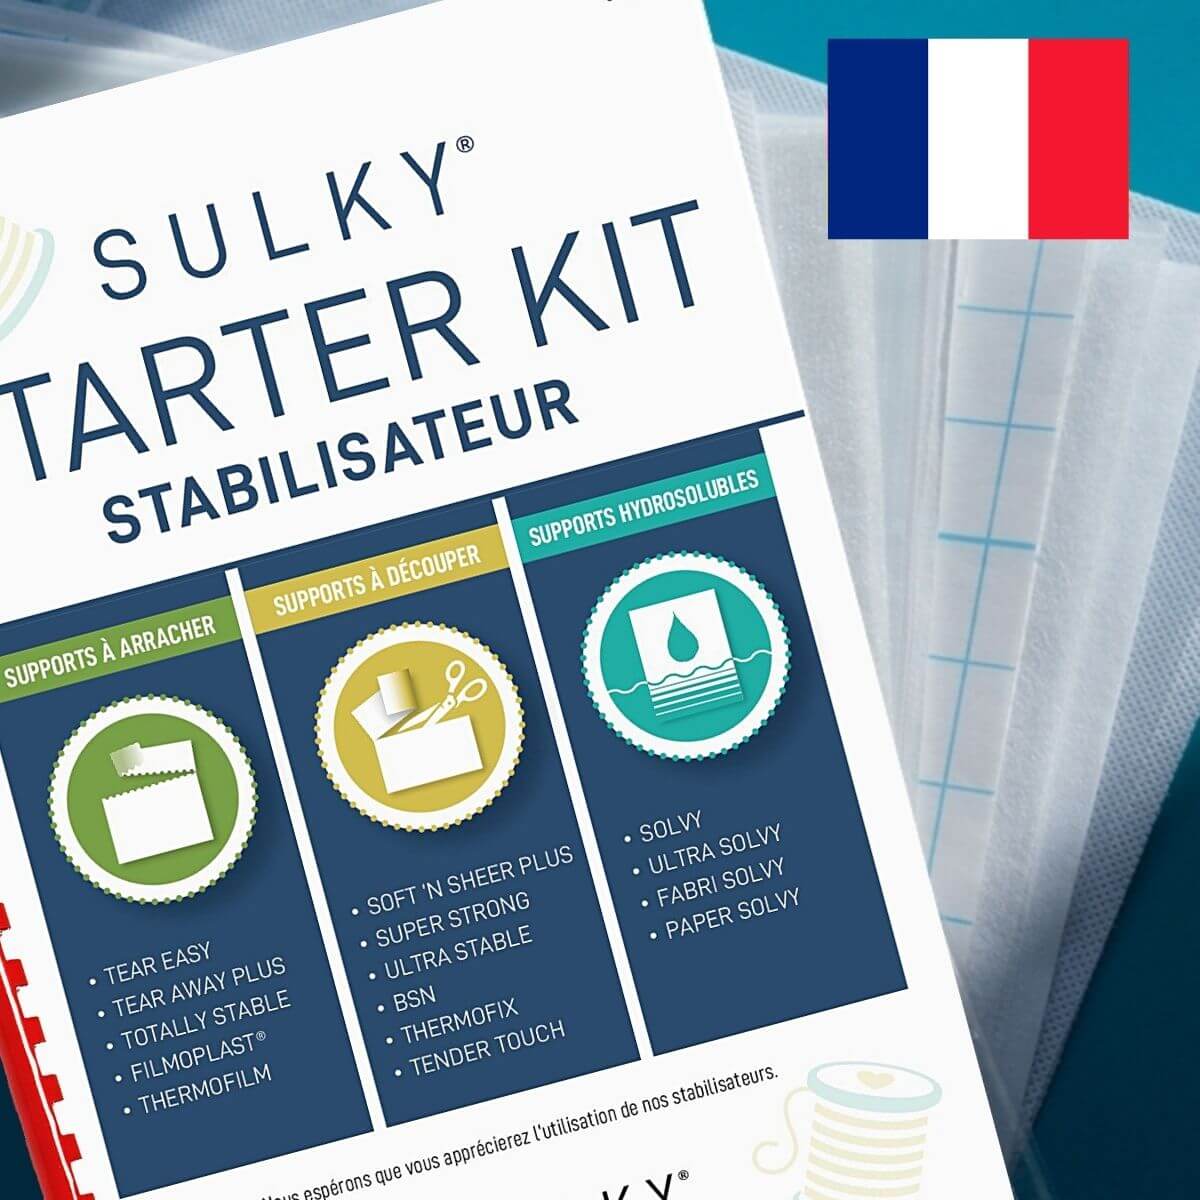 SULKY STARTER KIT - Stabilisateur (in
Französisch) - mit 15 Musterbögen